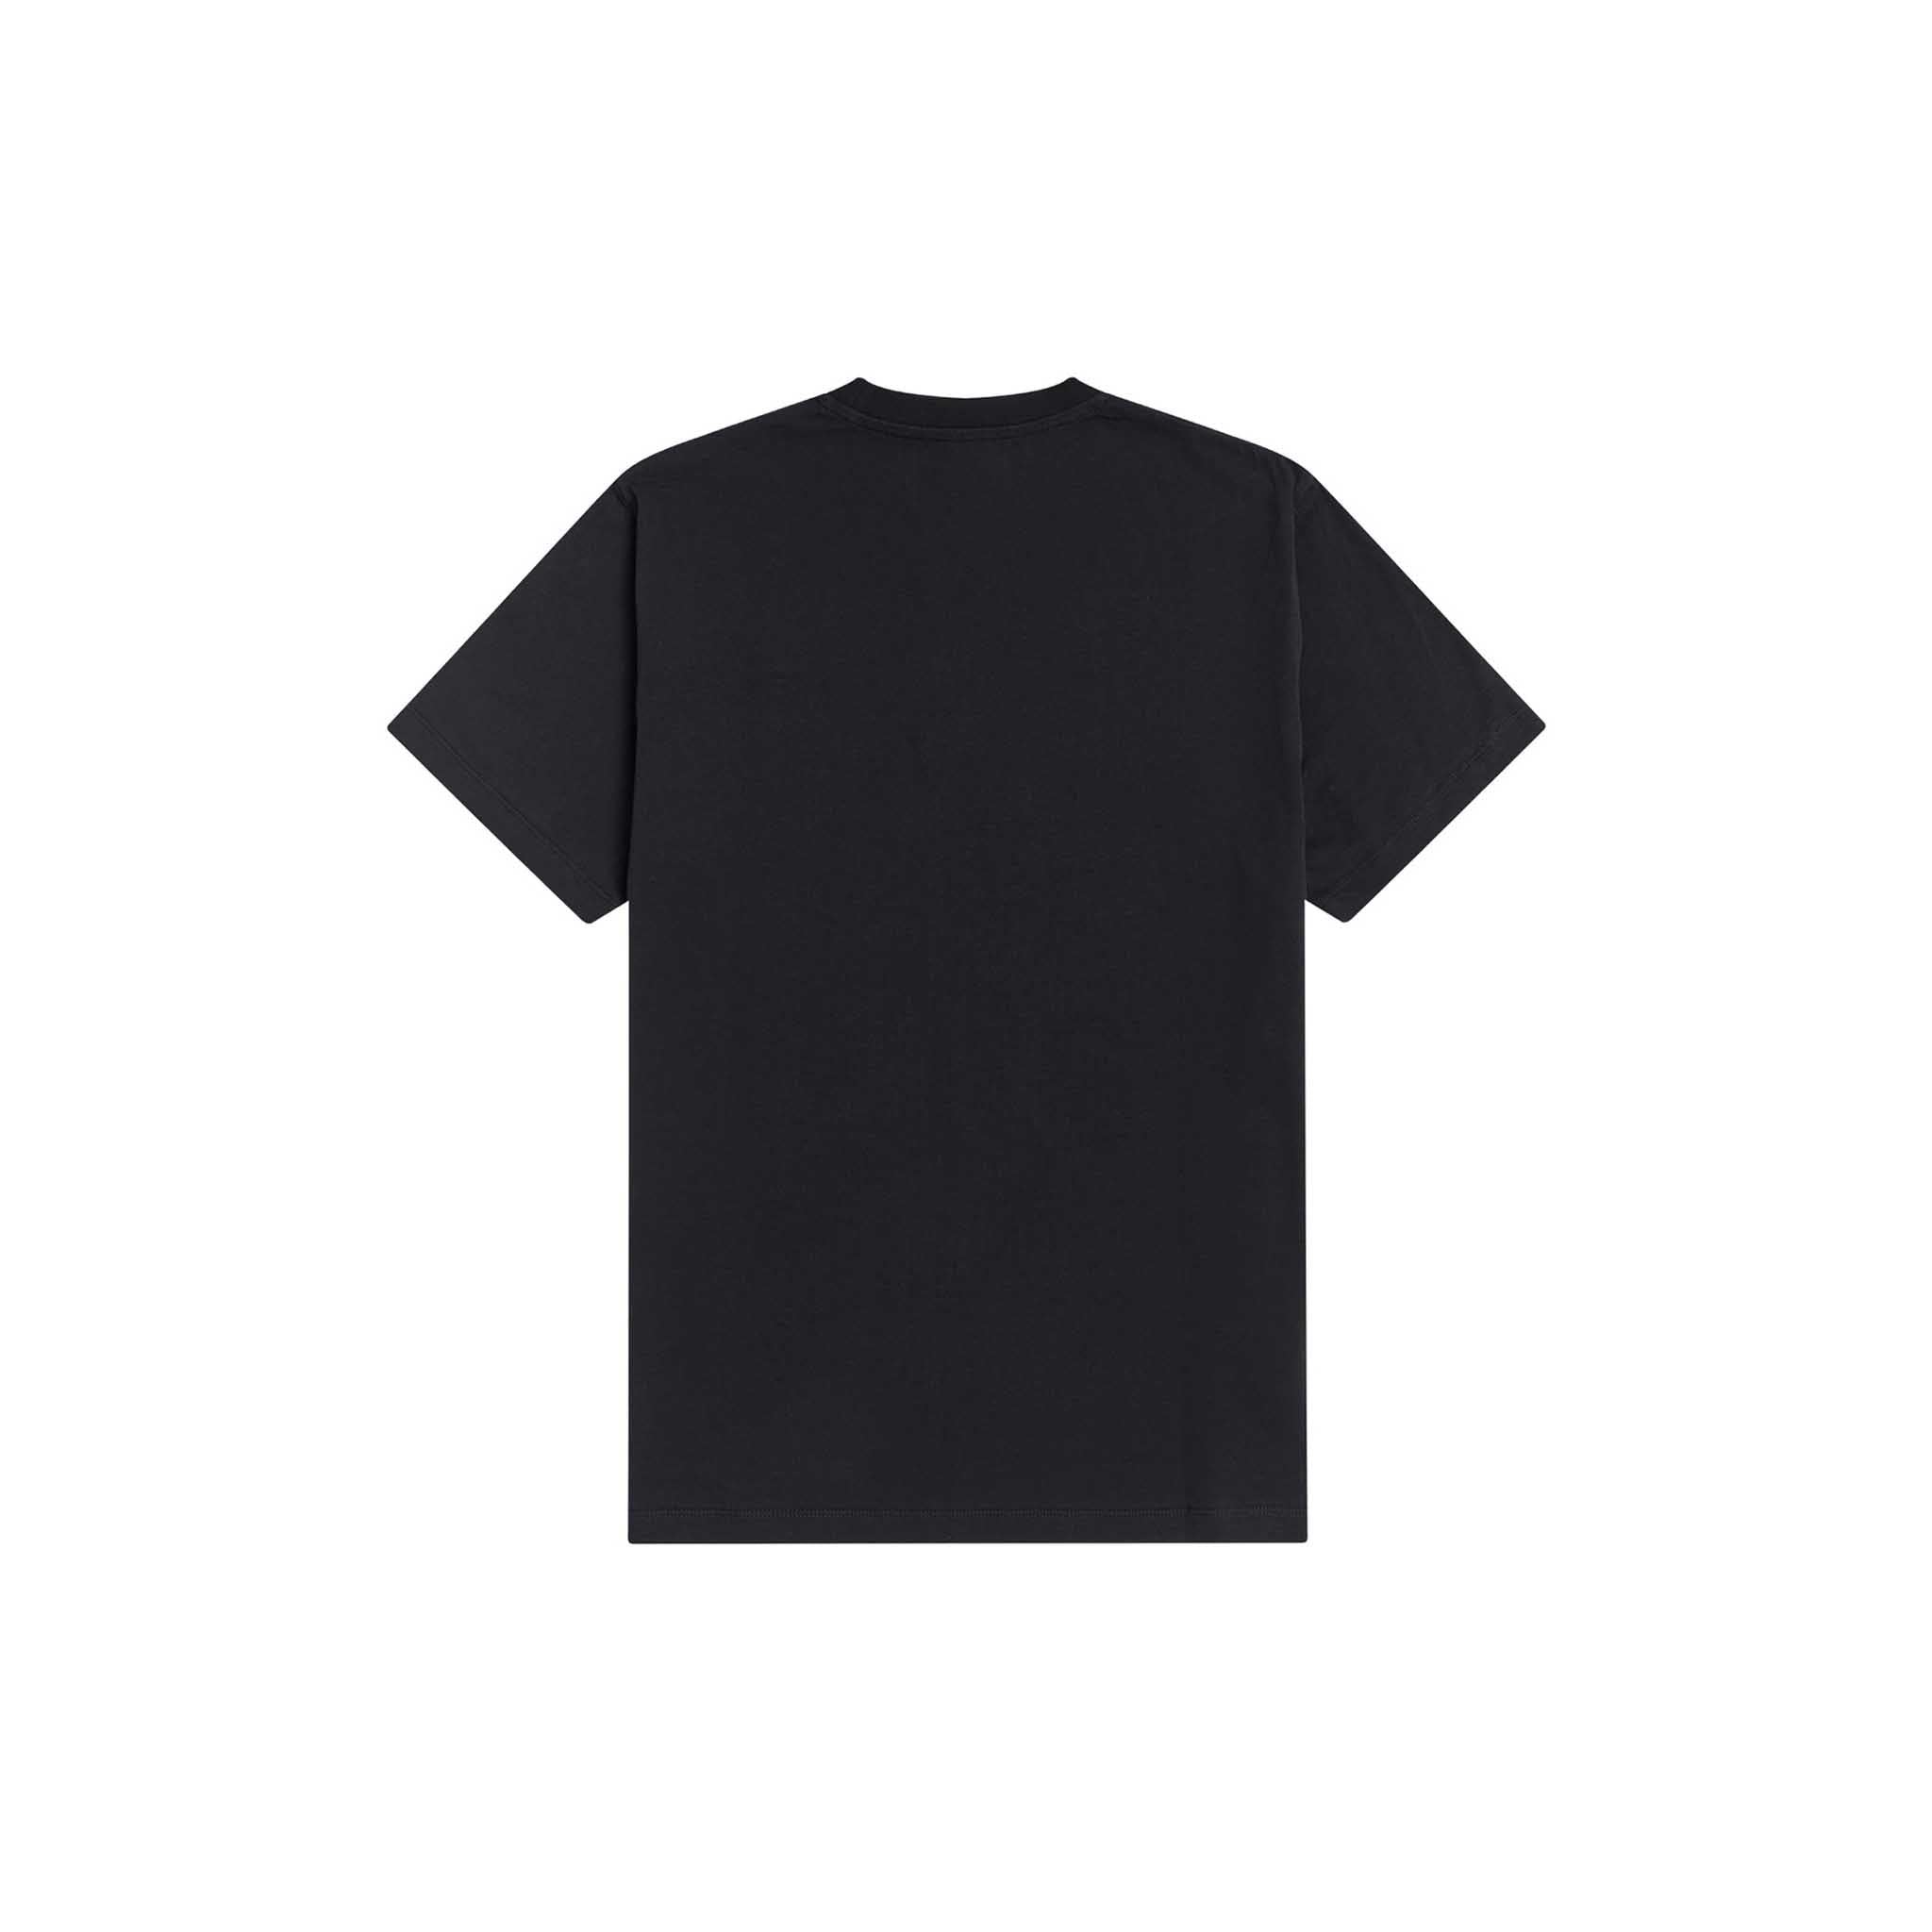 Fred Perry x Raf Simons Laurel Detail T-Shirt Black